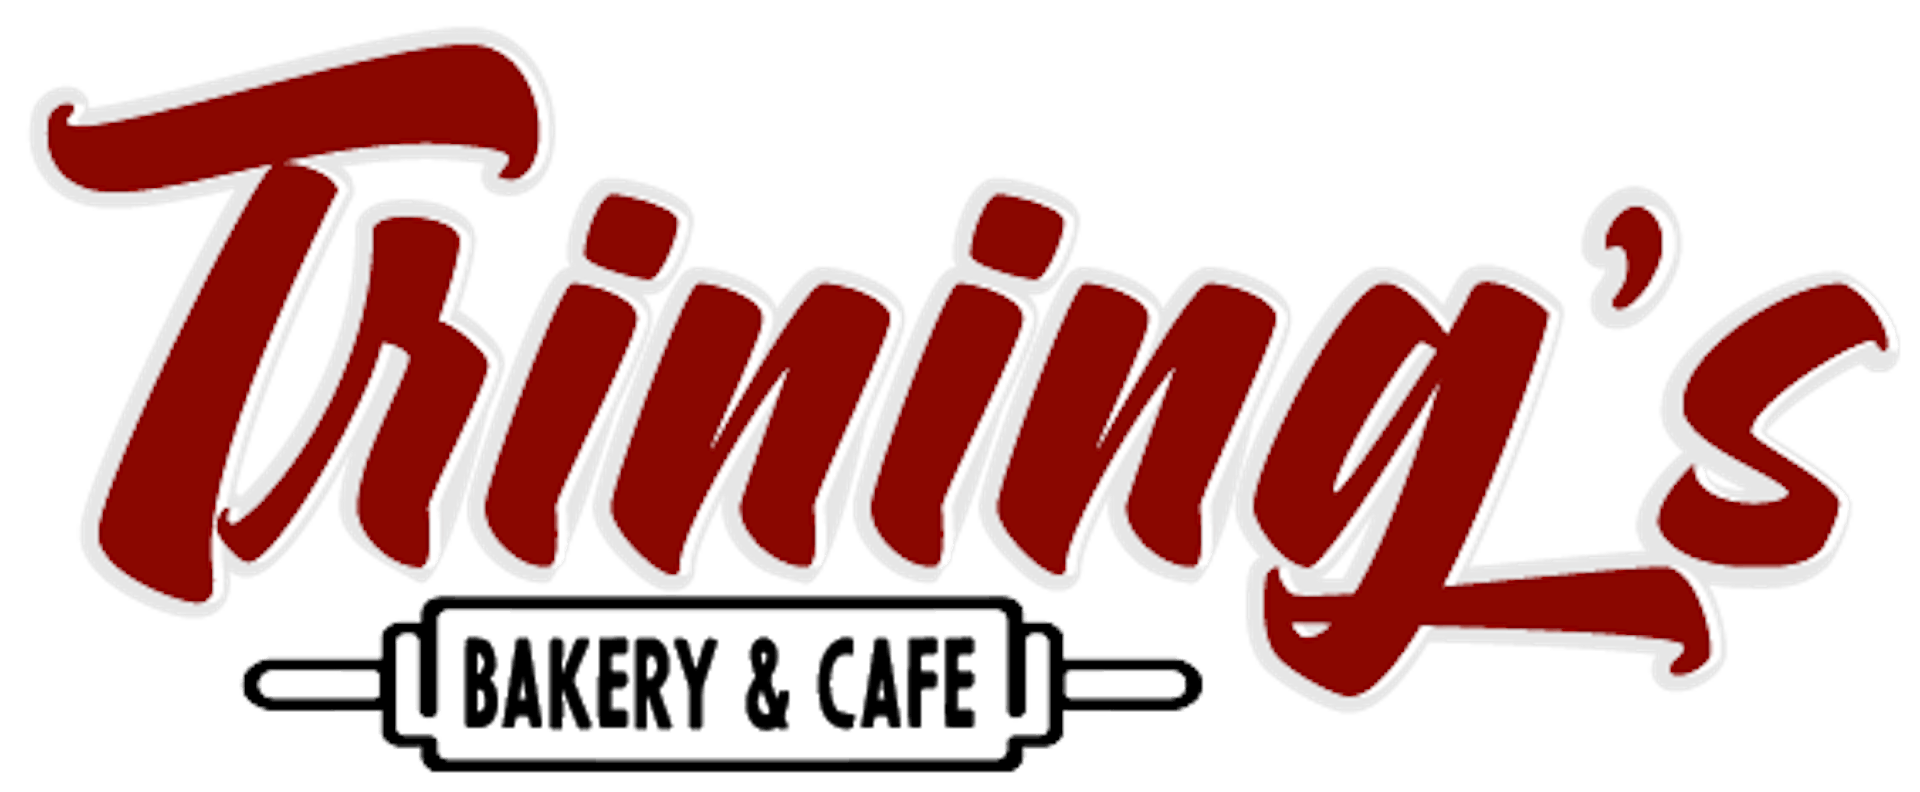 Trining's Bakery & Cafe